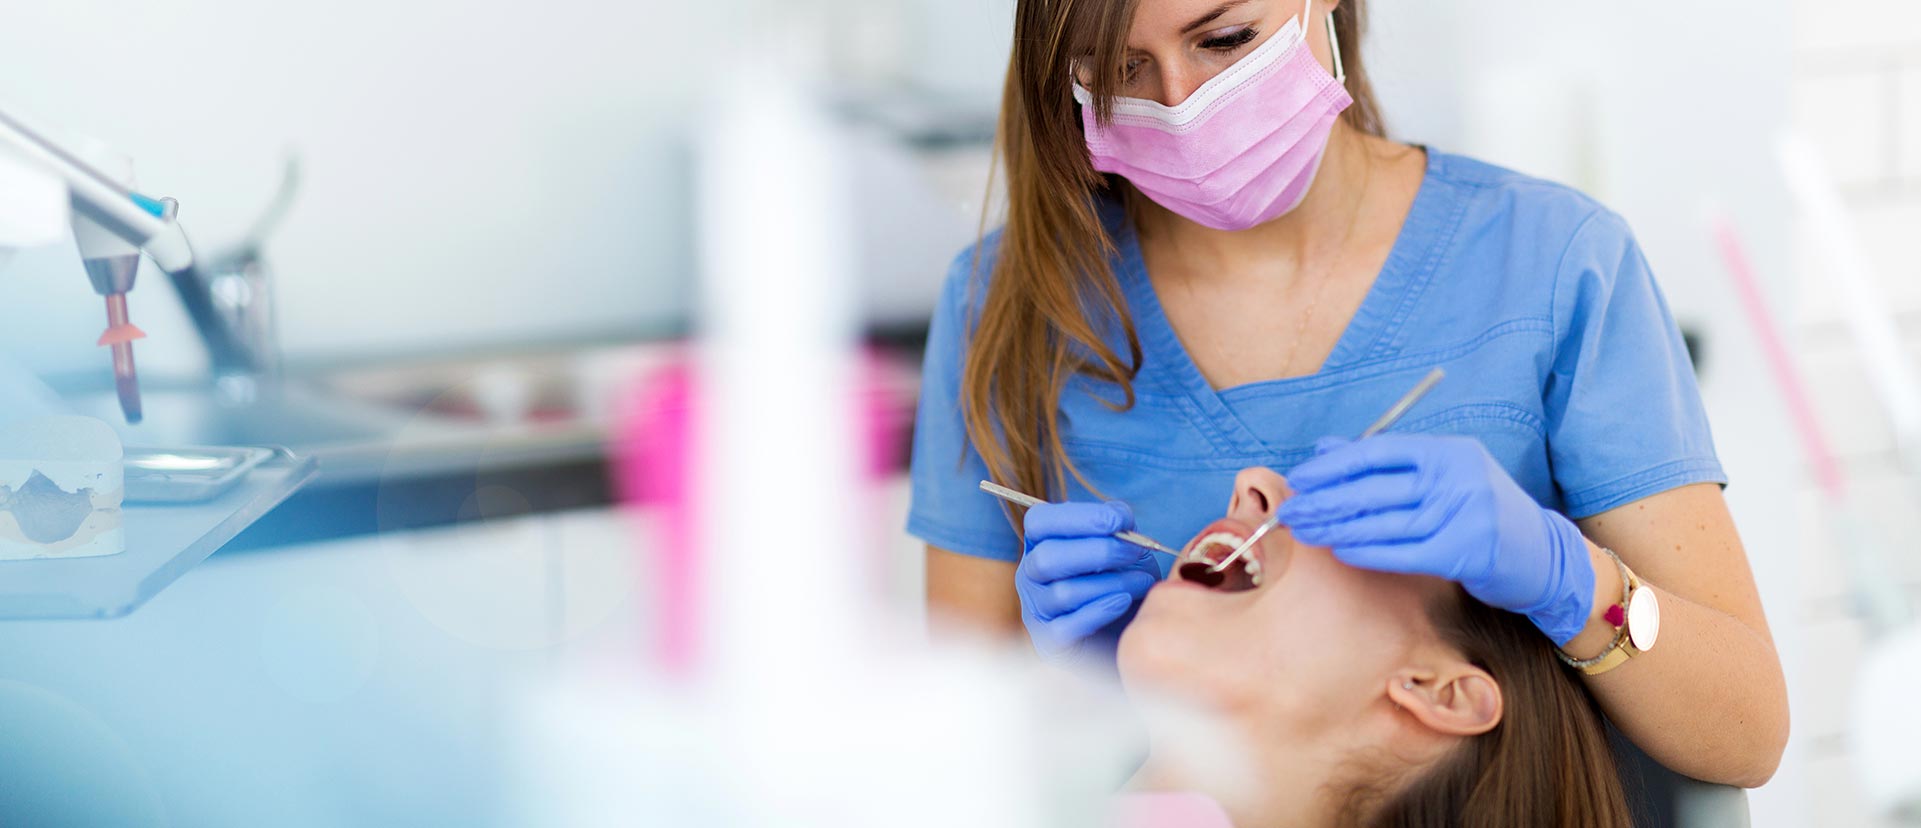 Woman having dental surgery at the dental